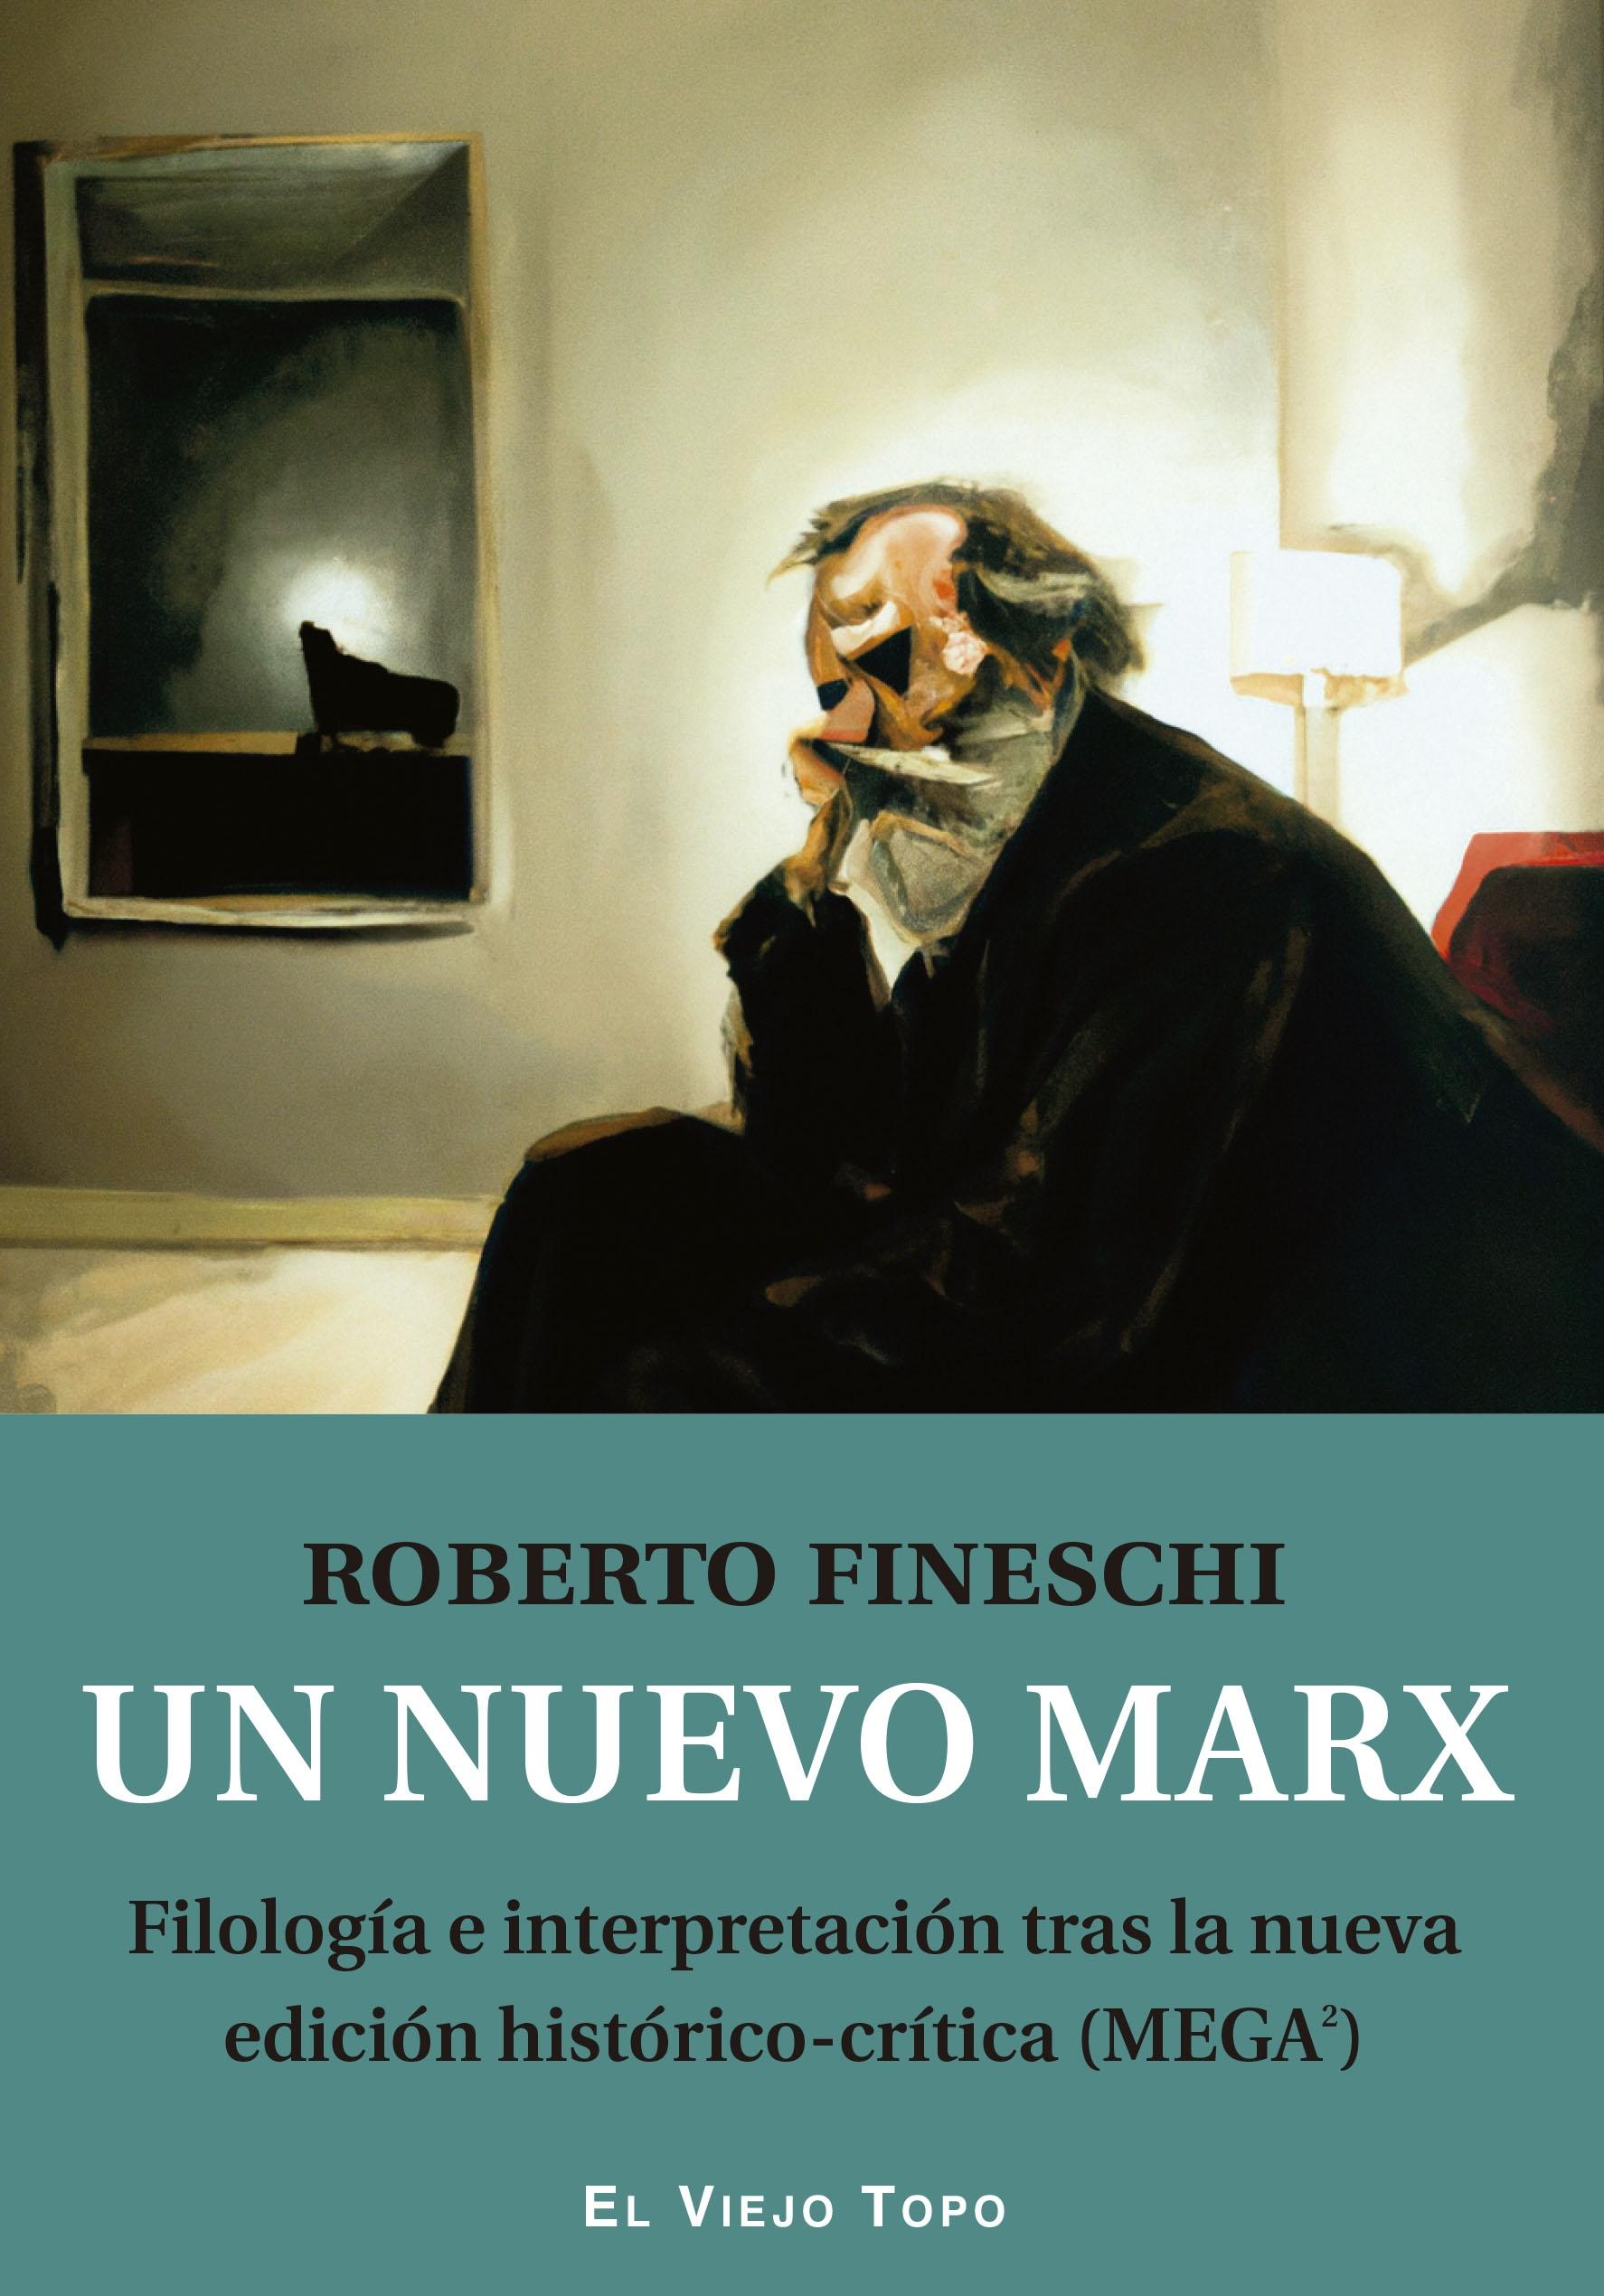 Nuevo Marx, Un "Filología e interpretación tras la nueva edición histórico-crítica (MEGA"